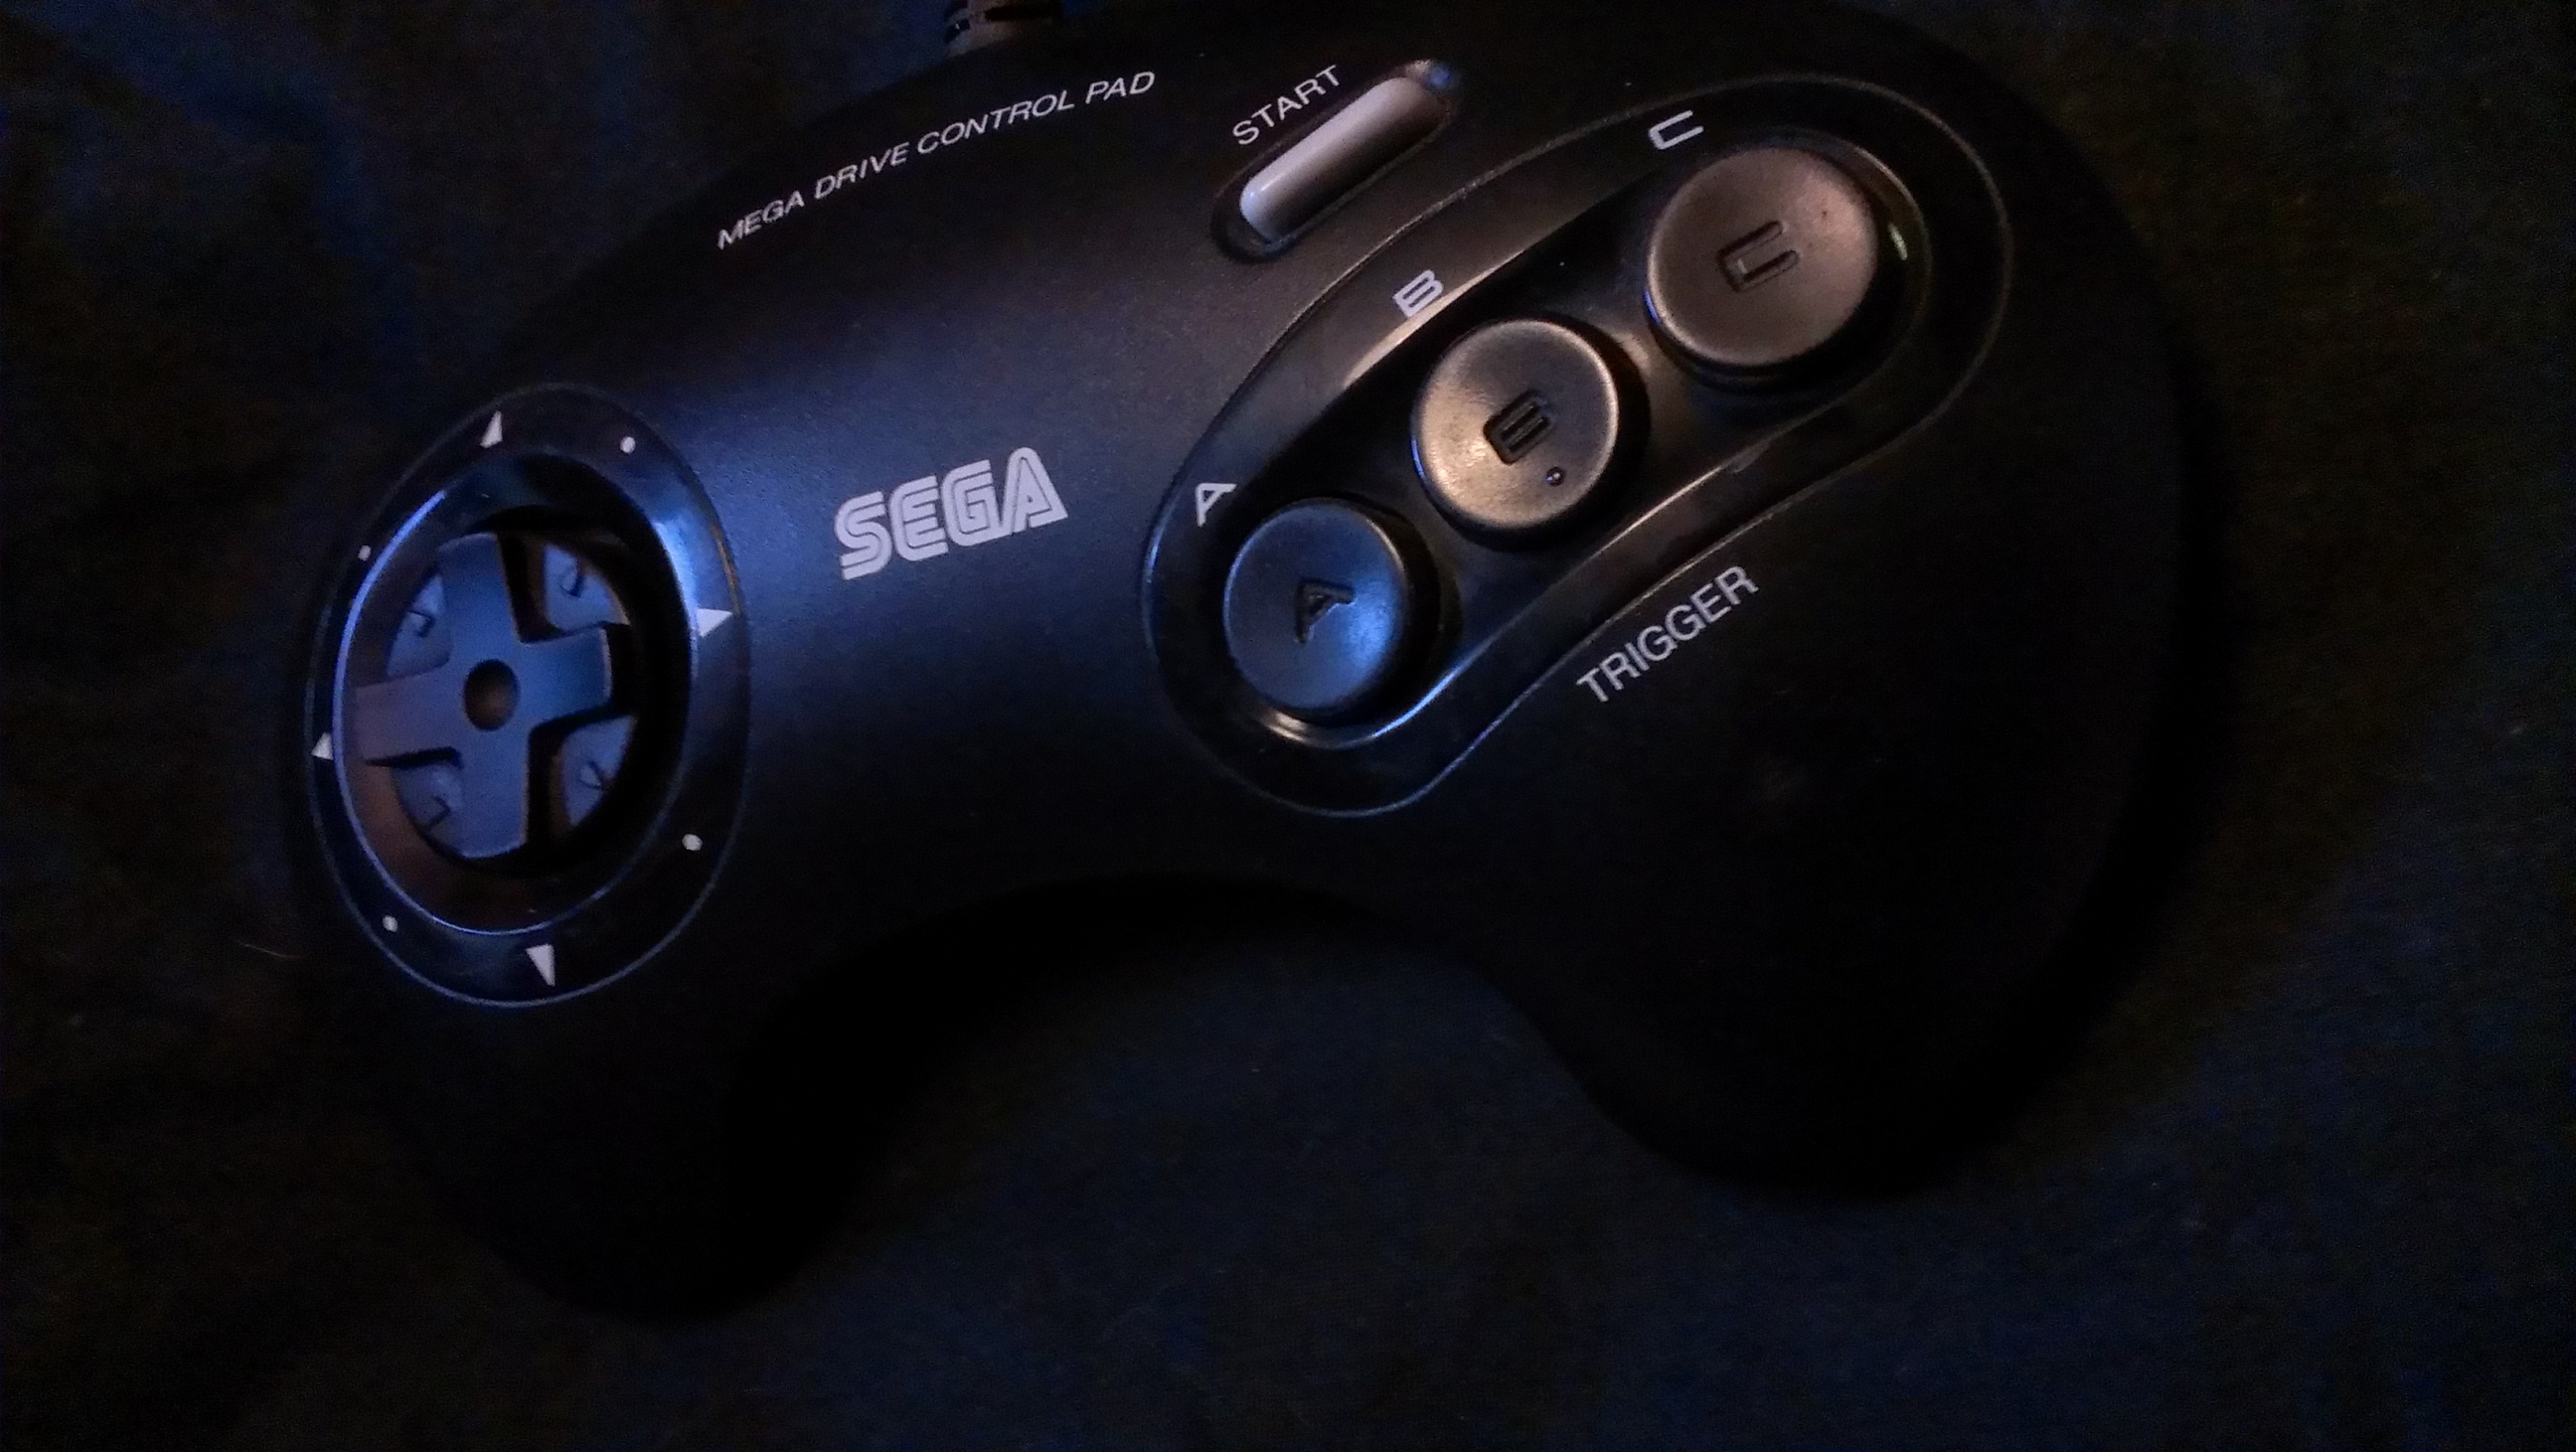 Sega Genesis Controller Wallpaper Megadrive